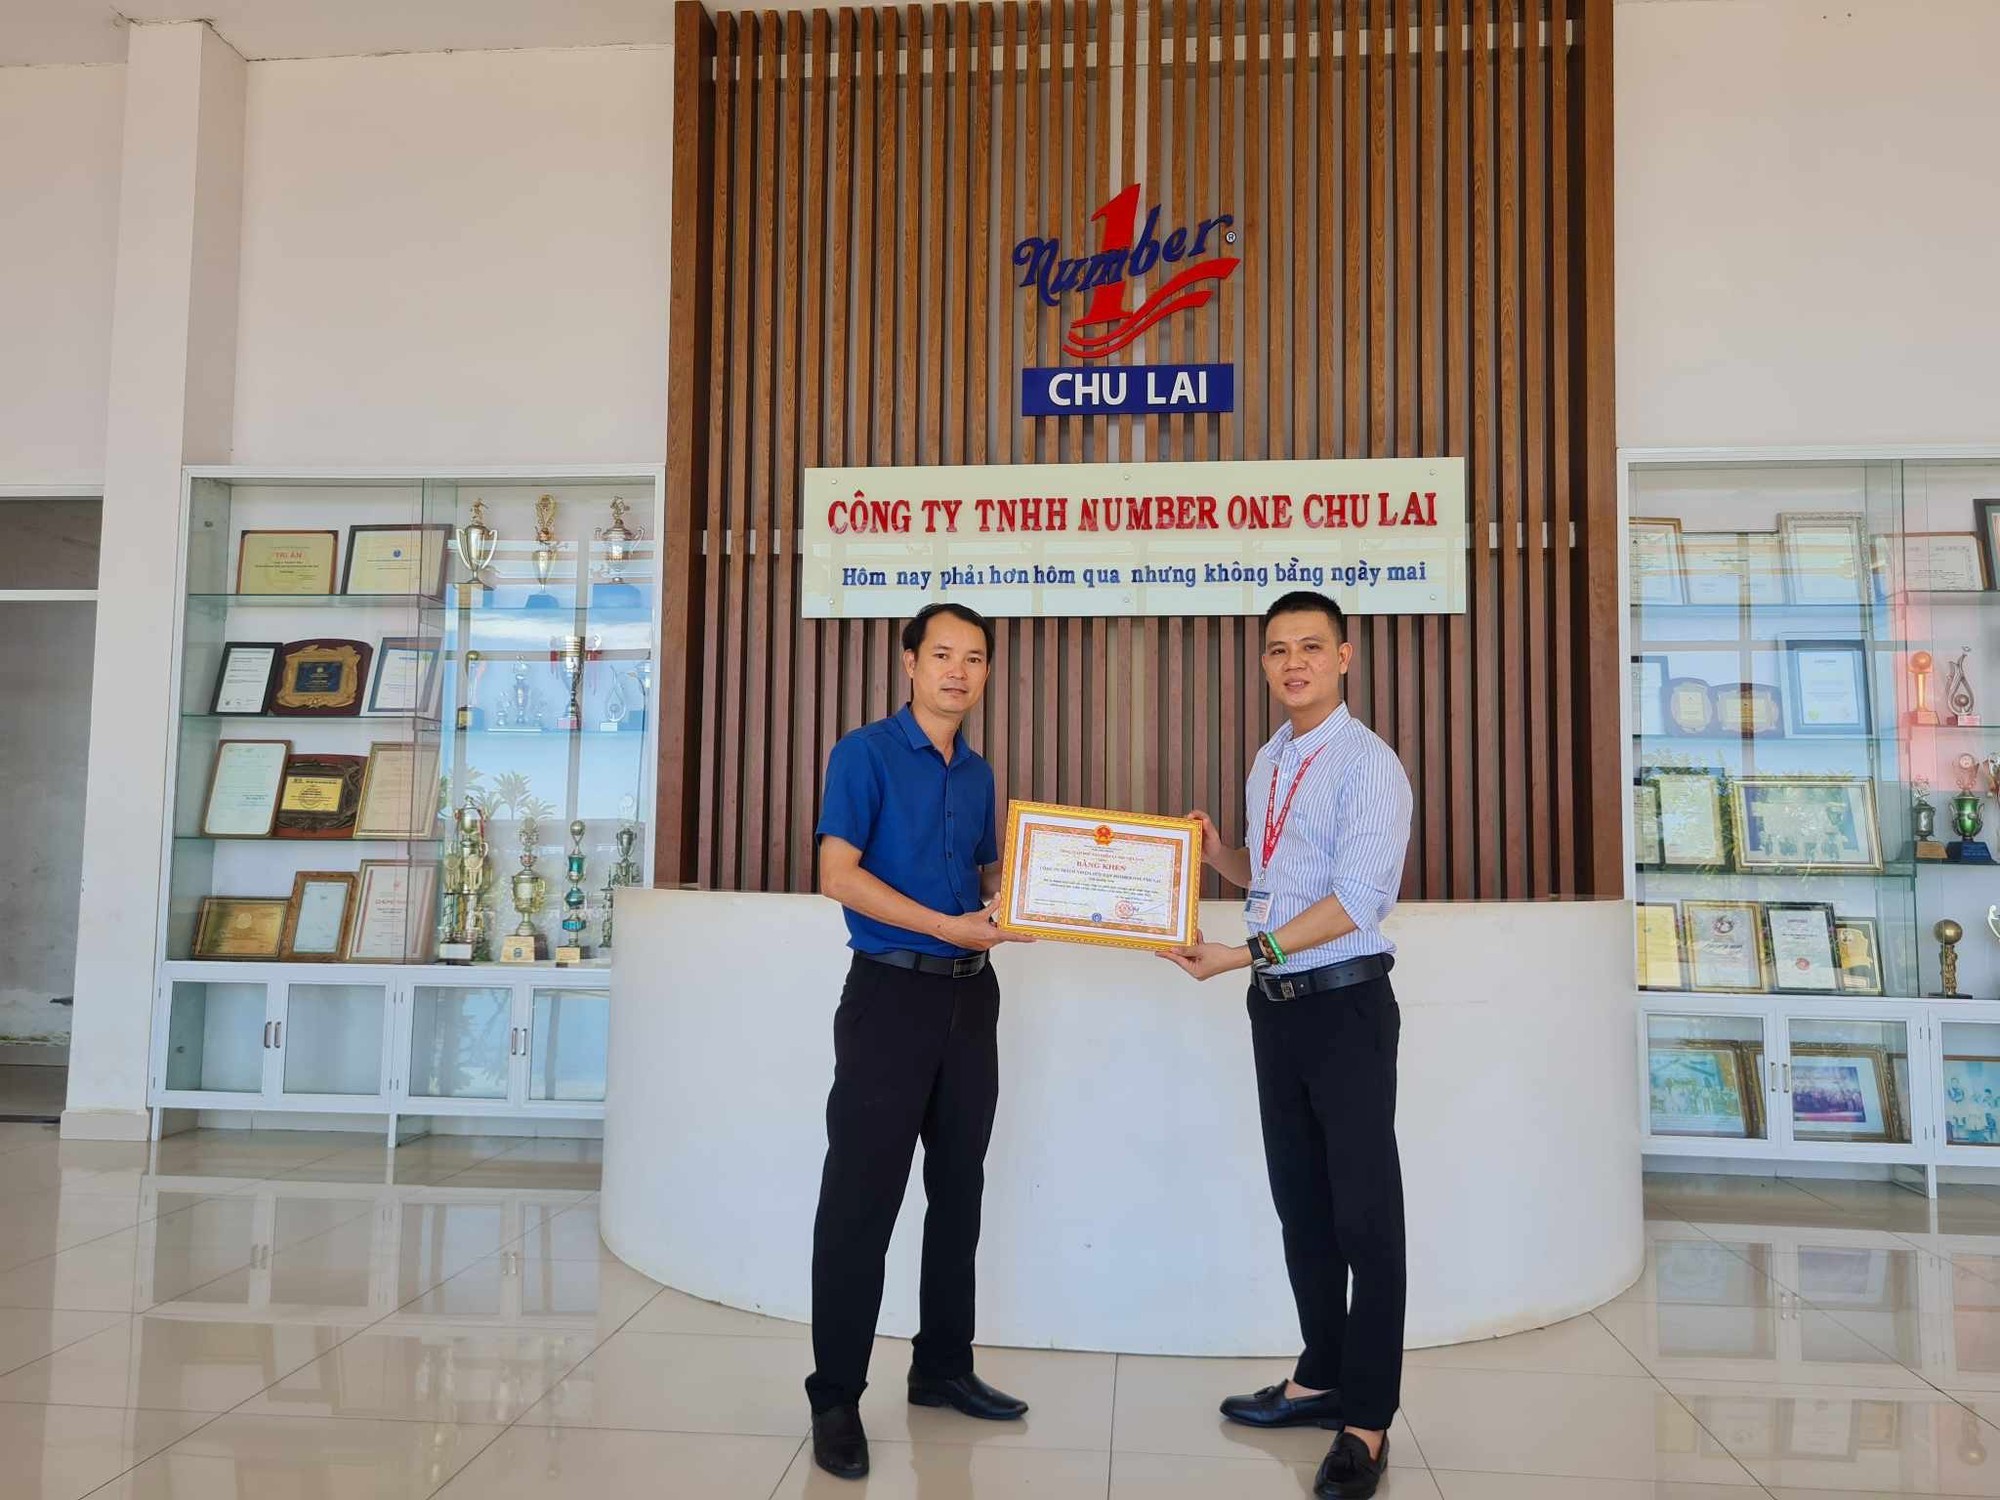 Đảm bảo chính sách quyền lợi người lao động, nhà máy Number One Chu Lai nhận bằng khen từ Bảo hiểm xã hội Việt Nam - Ảnh 2.